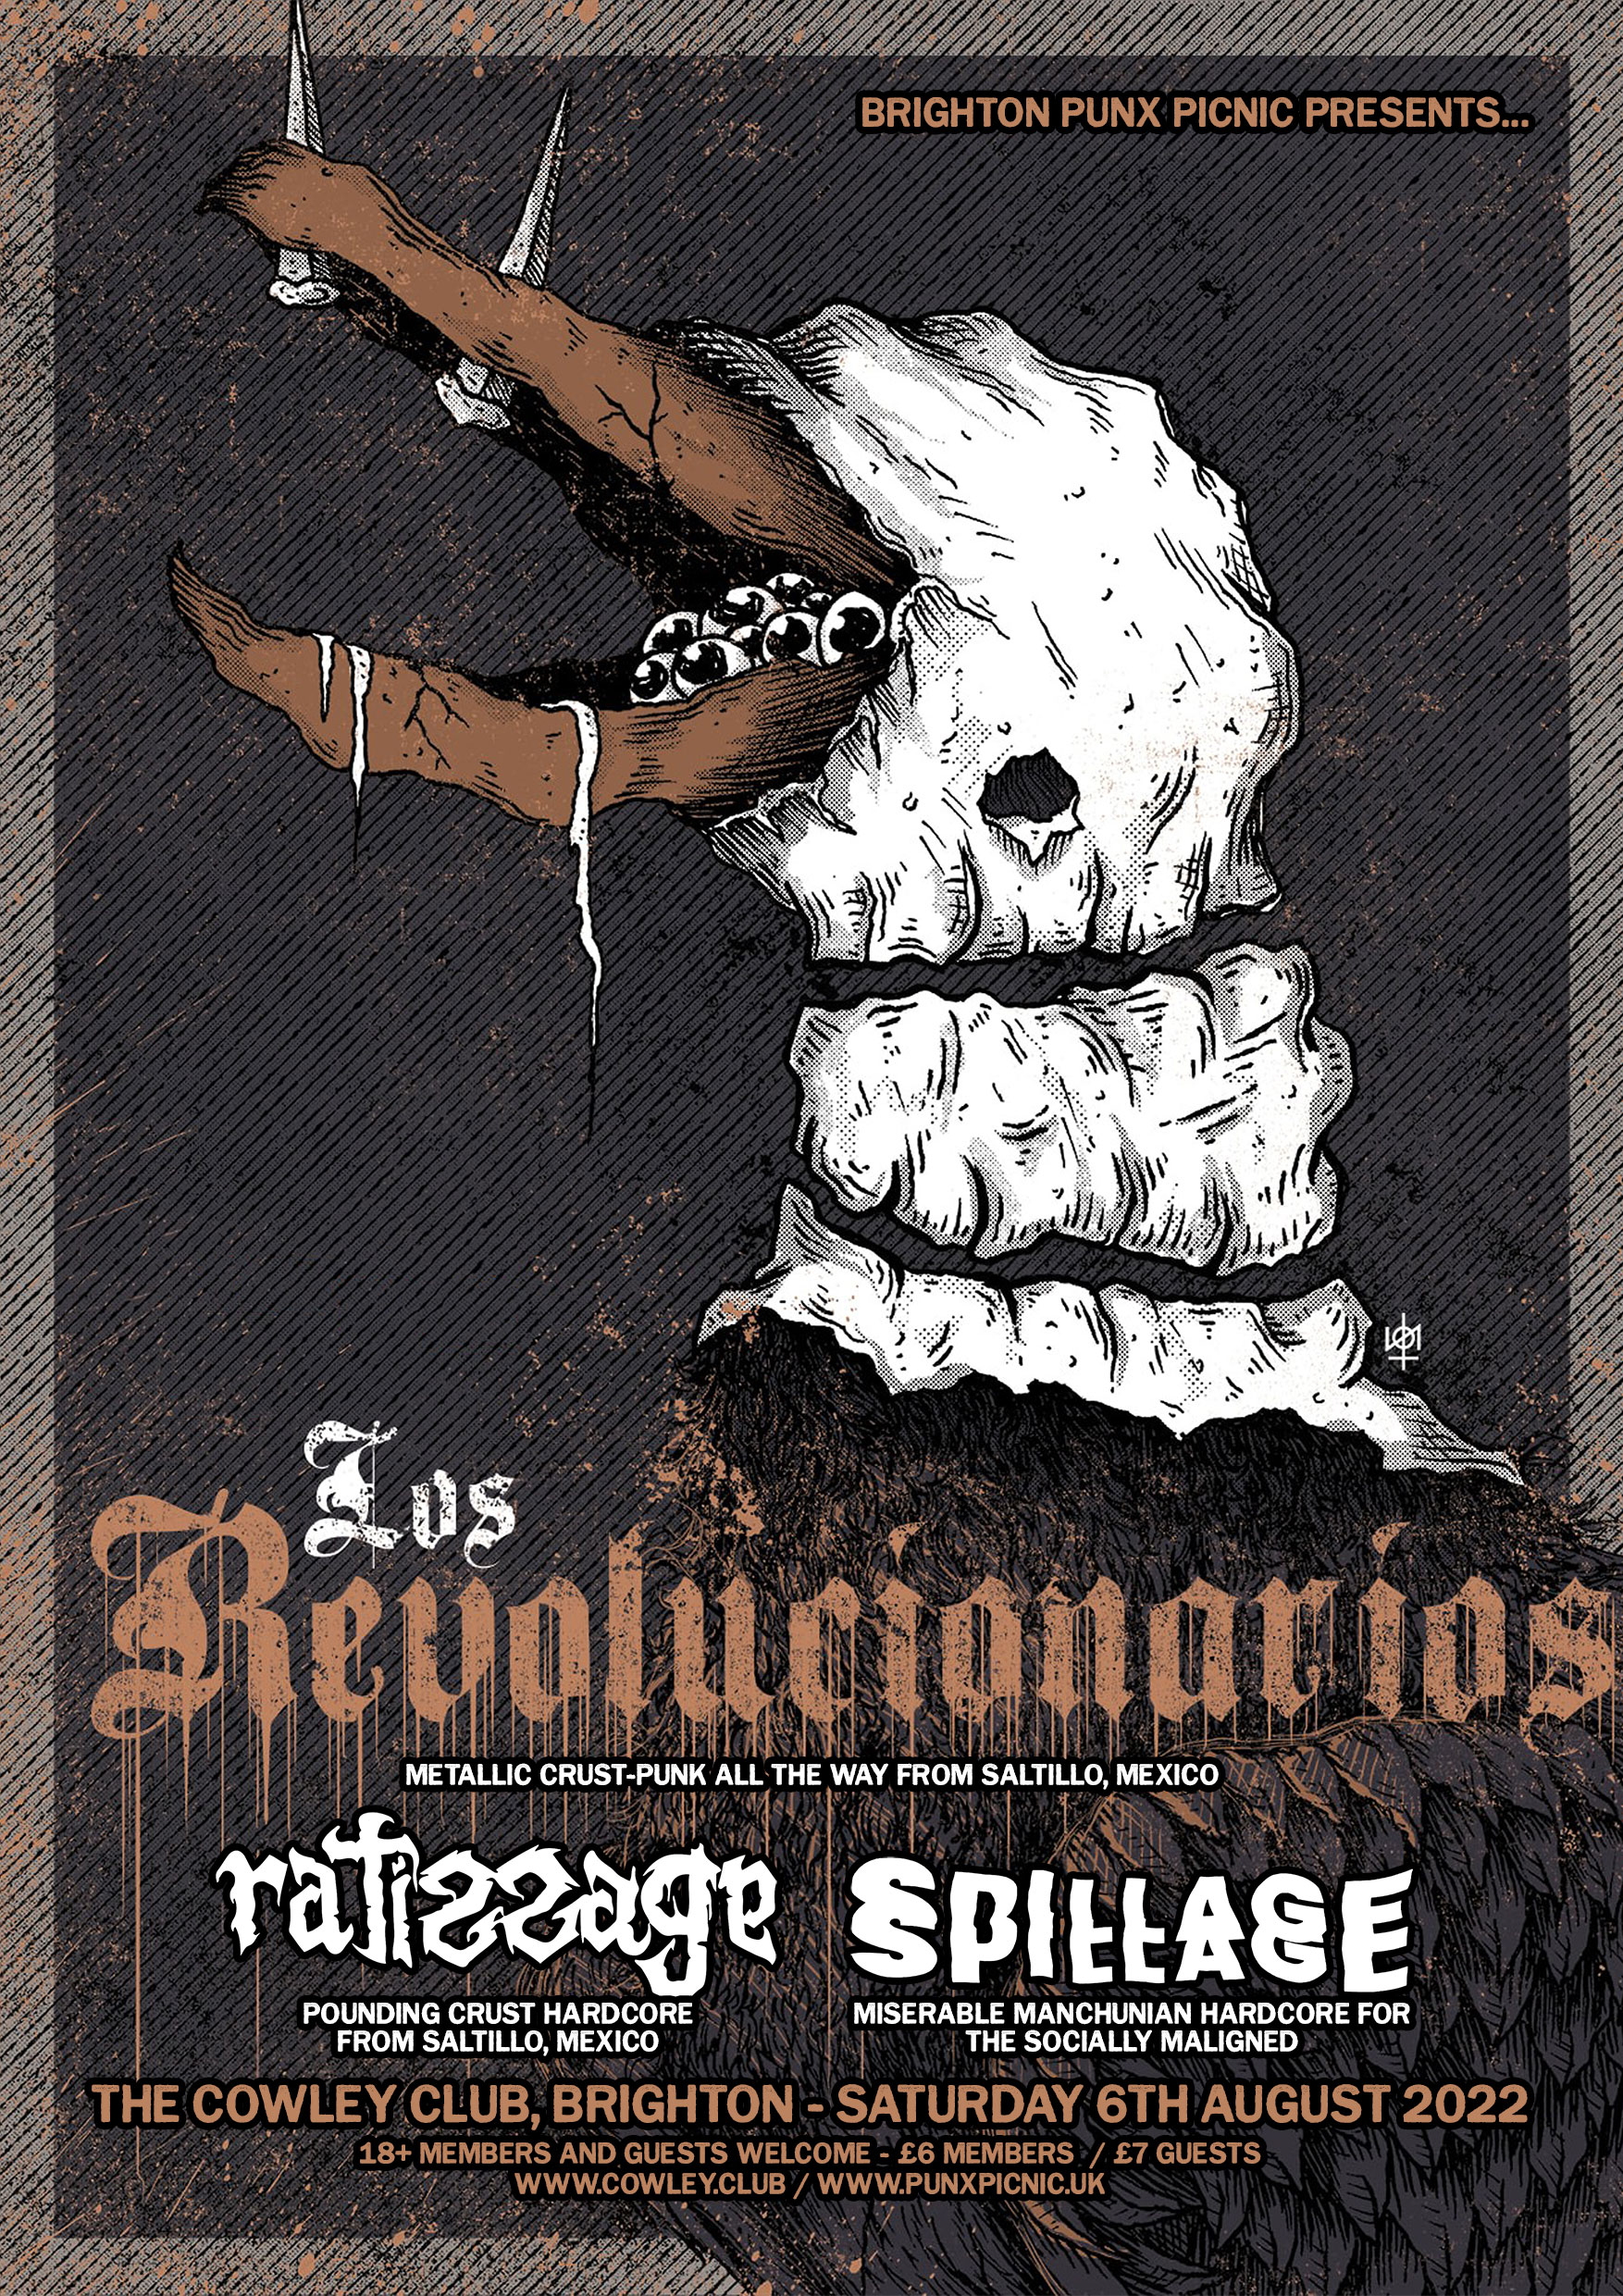 Los Revolucionarios / Ratissage / Spillage